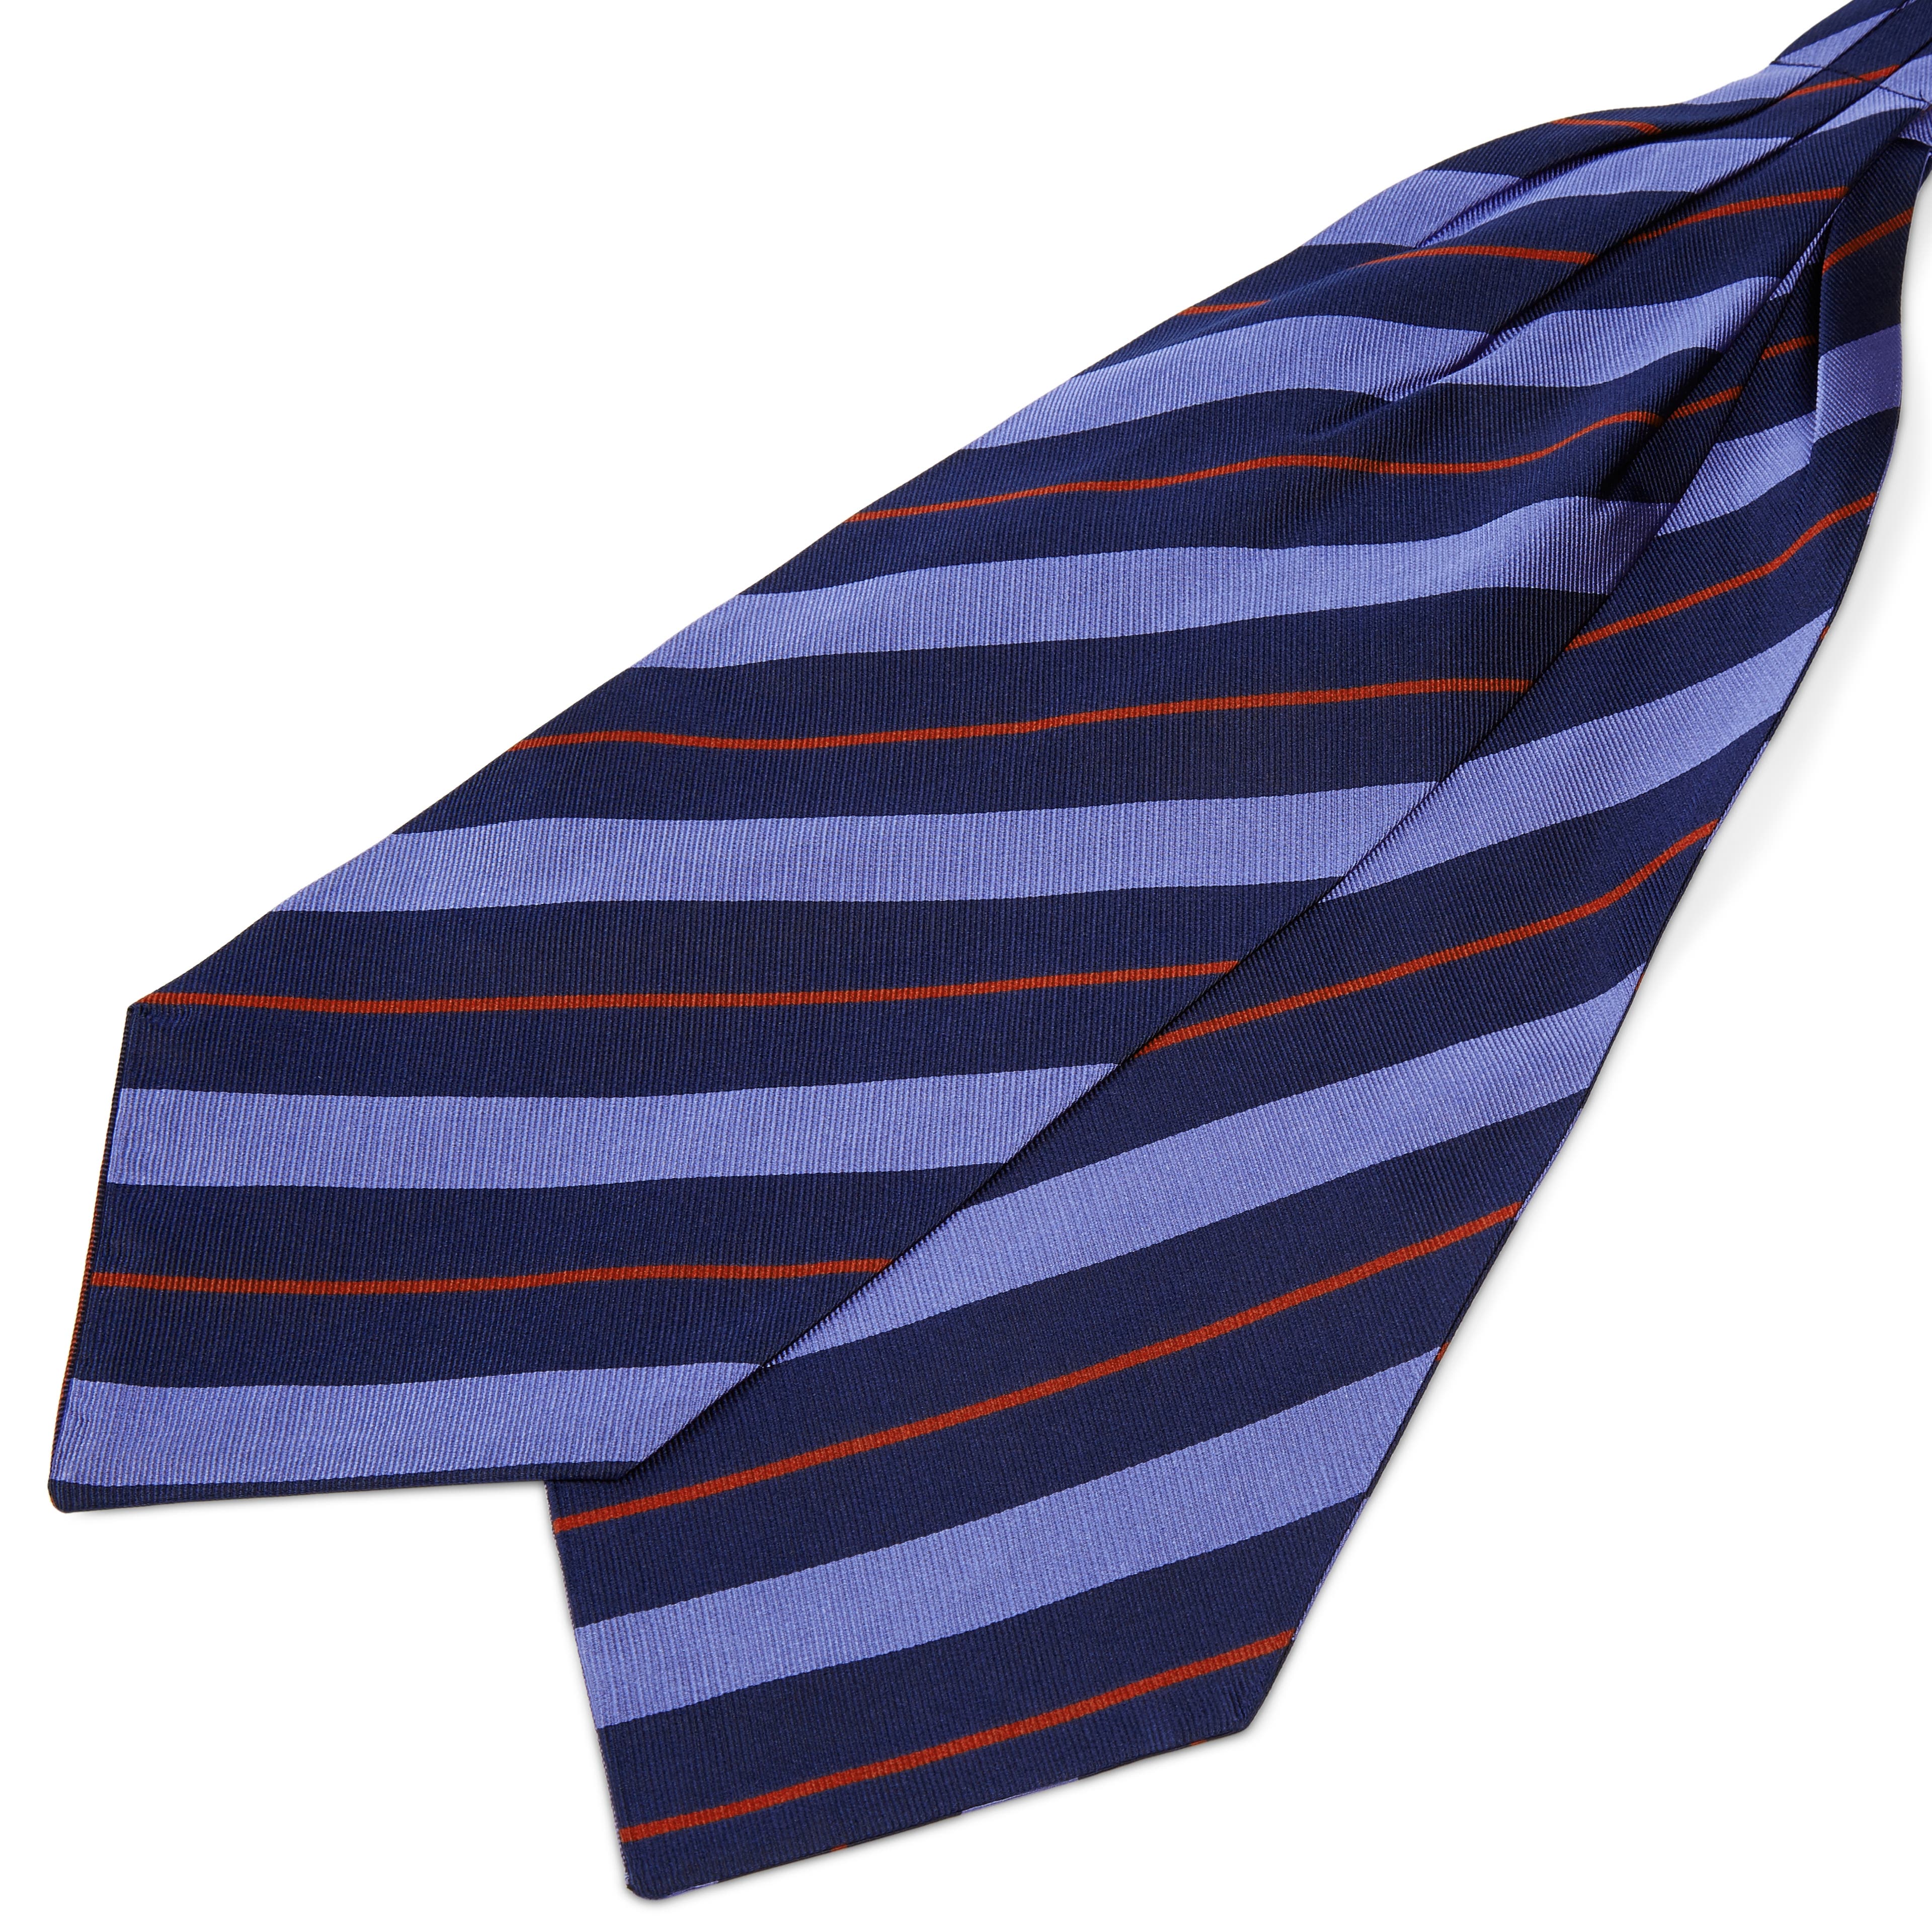 Ciemnogranatowy krawat jedwabny w pastelowe niebiesko-czerwone paski